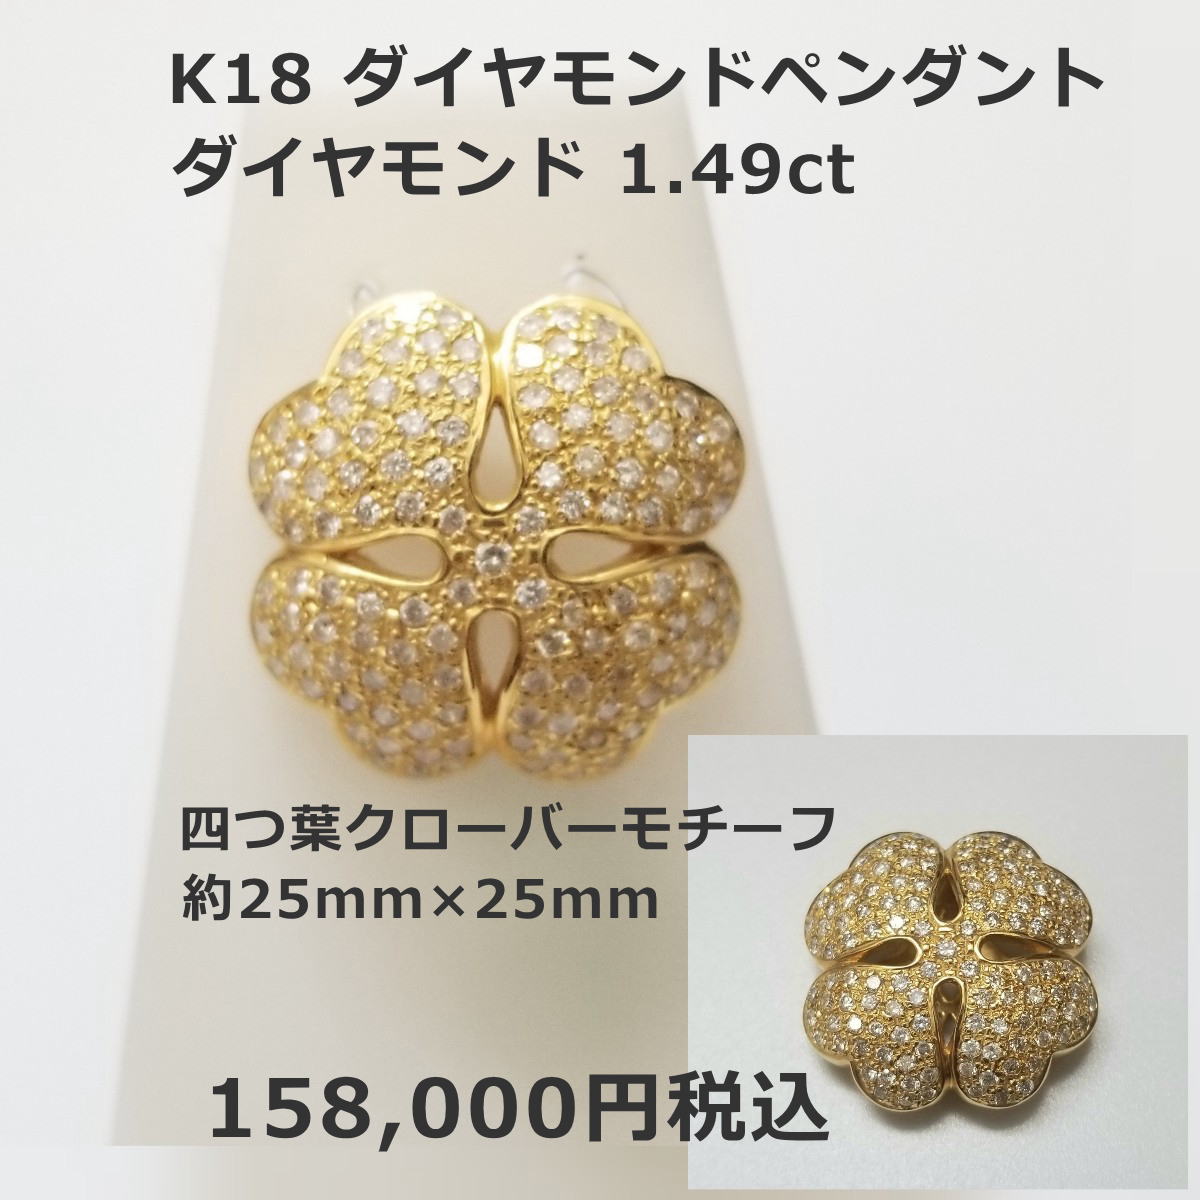 K18ダイヤモンドペンダント四つ葉クローバーモチーフ ダイヤ1.49ct 158,000円税込